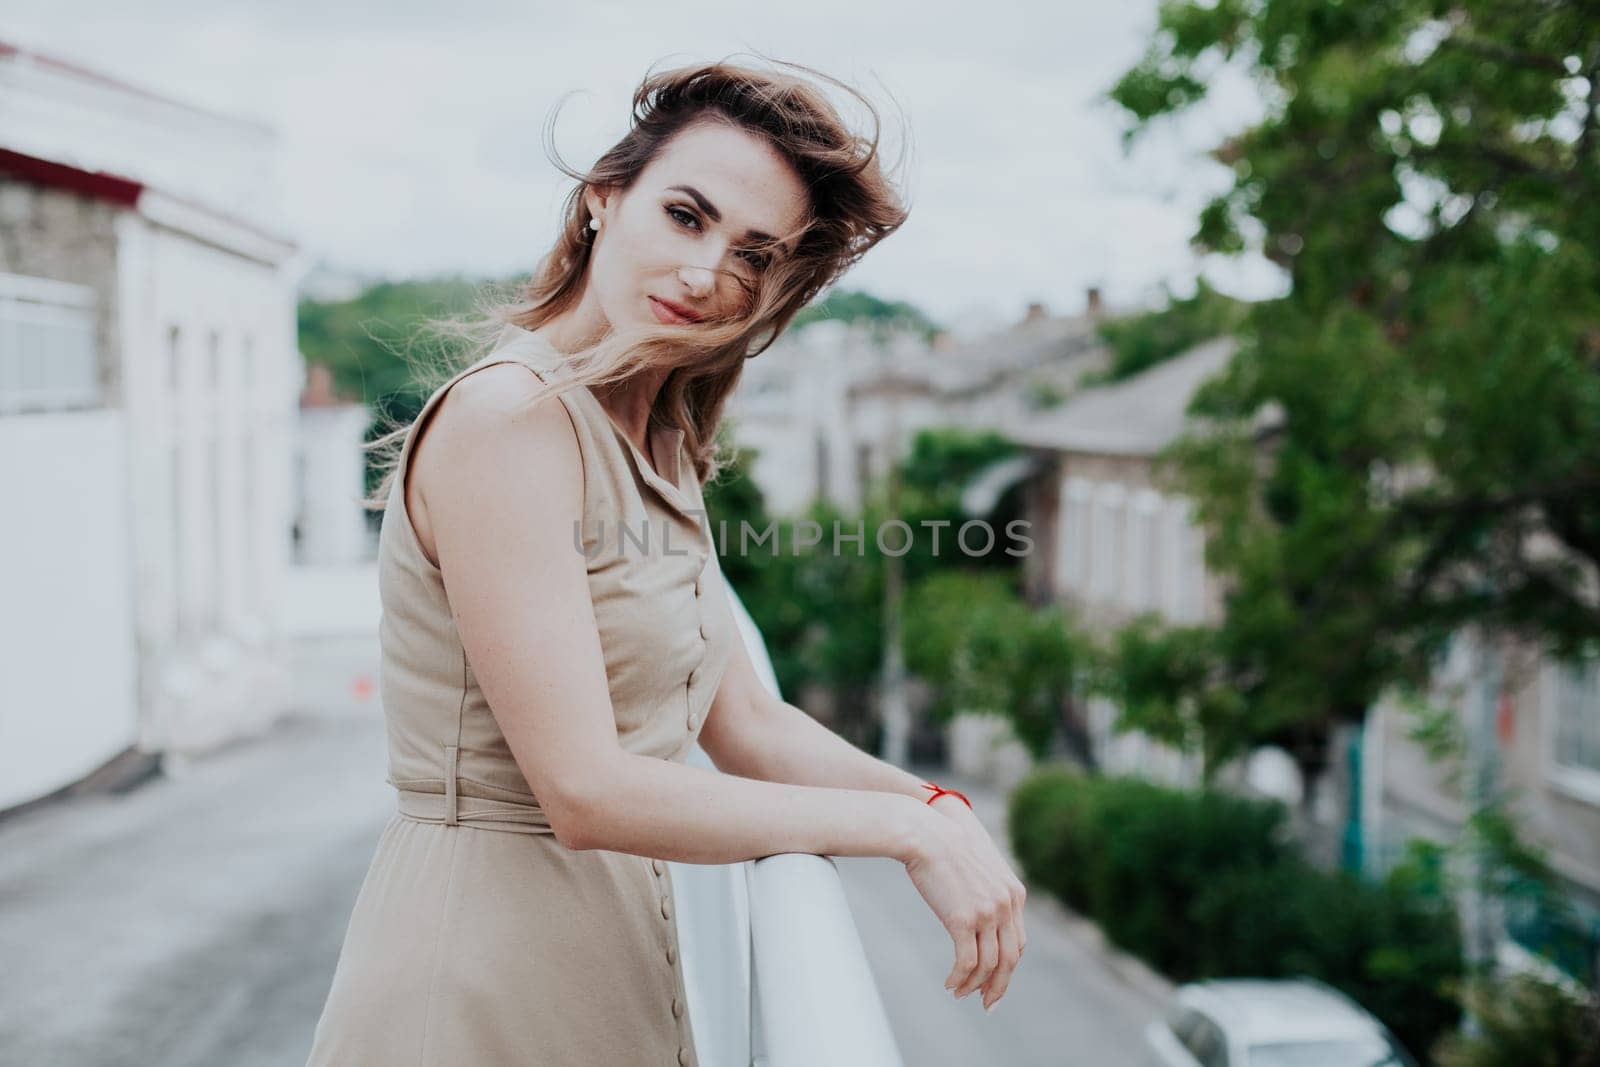 Portrait of a beautiful woman in a beige dress by Simakov